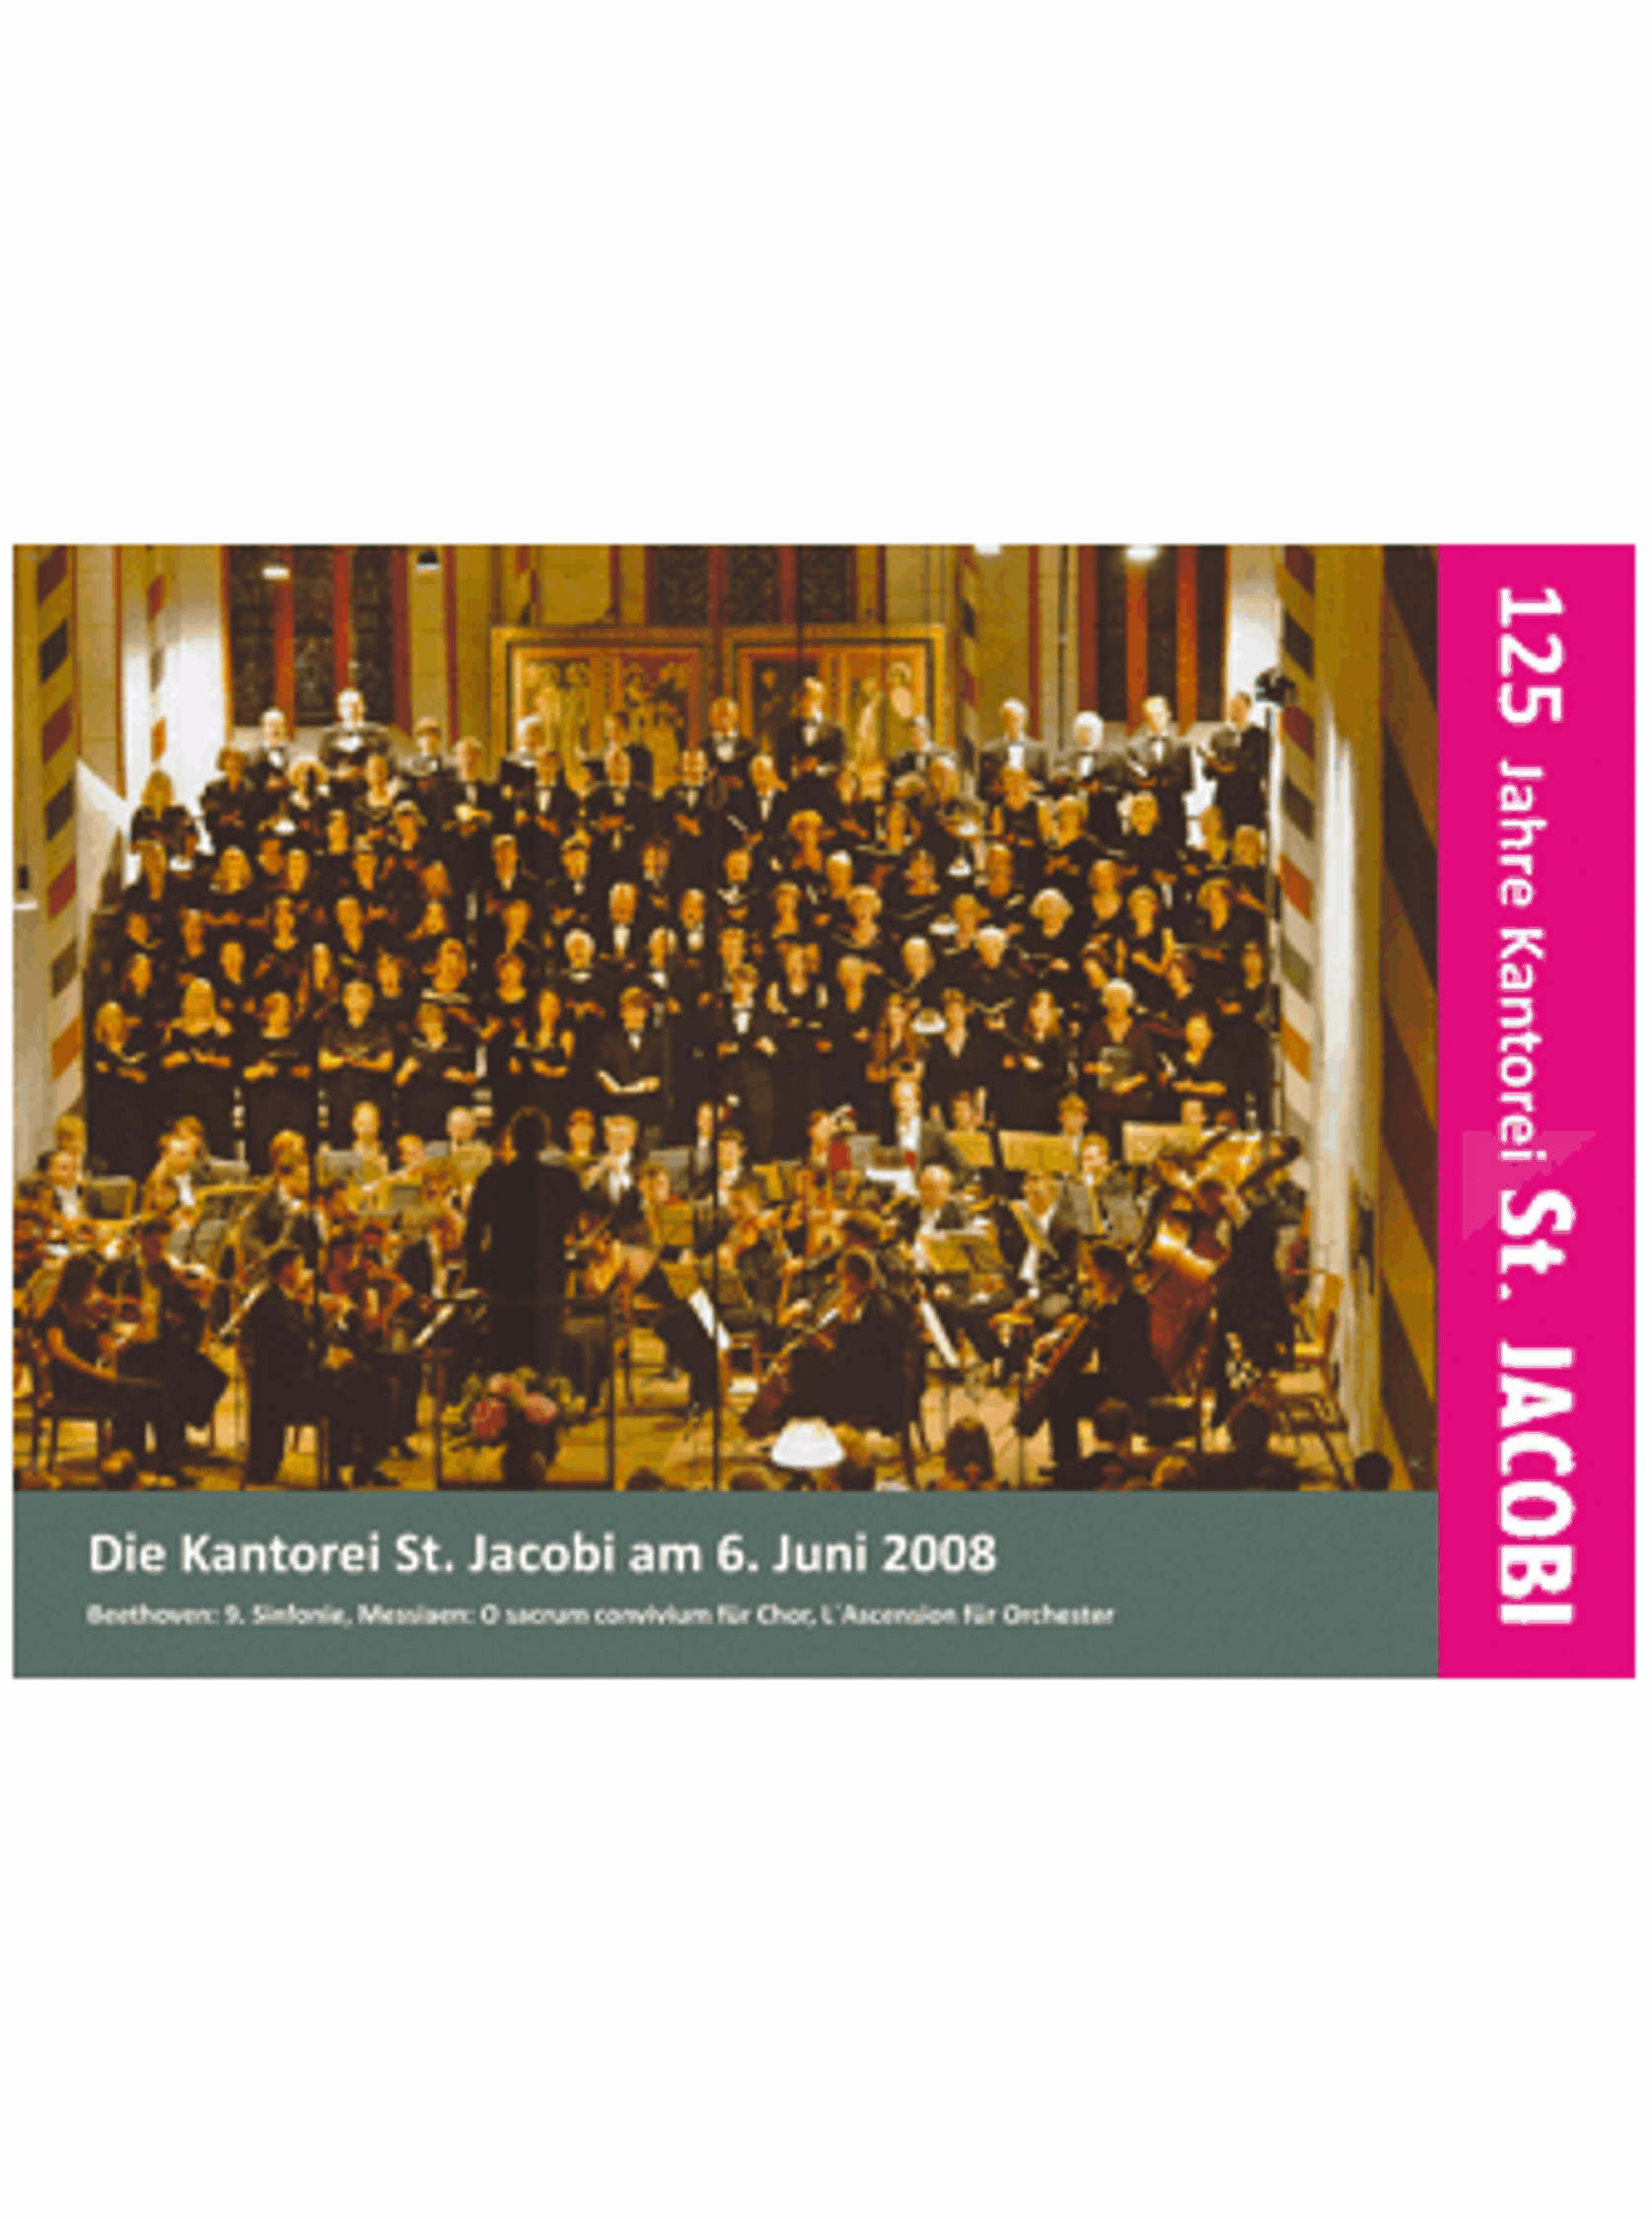 Kantorei 2008 mit Beethoven 9. Sinfonie